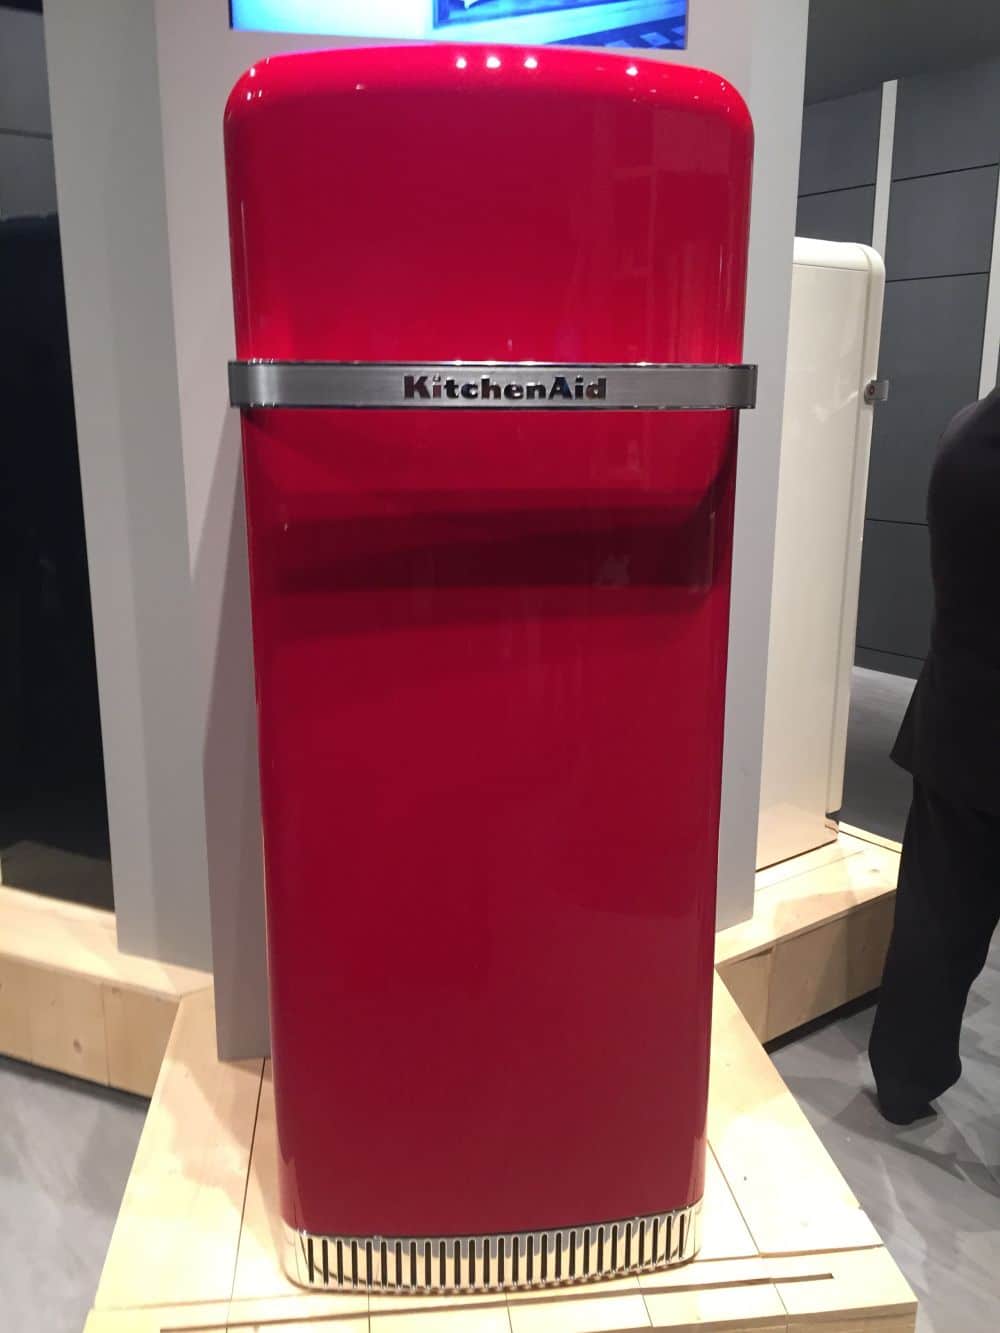 Le réfrigérateur étant généralement le plus gros appareil de la cuisine, sa couleur a un impact important sur l'ensemble de l'espace.